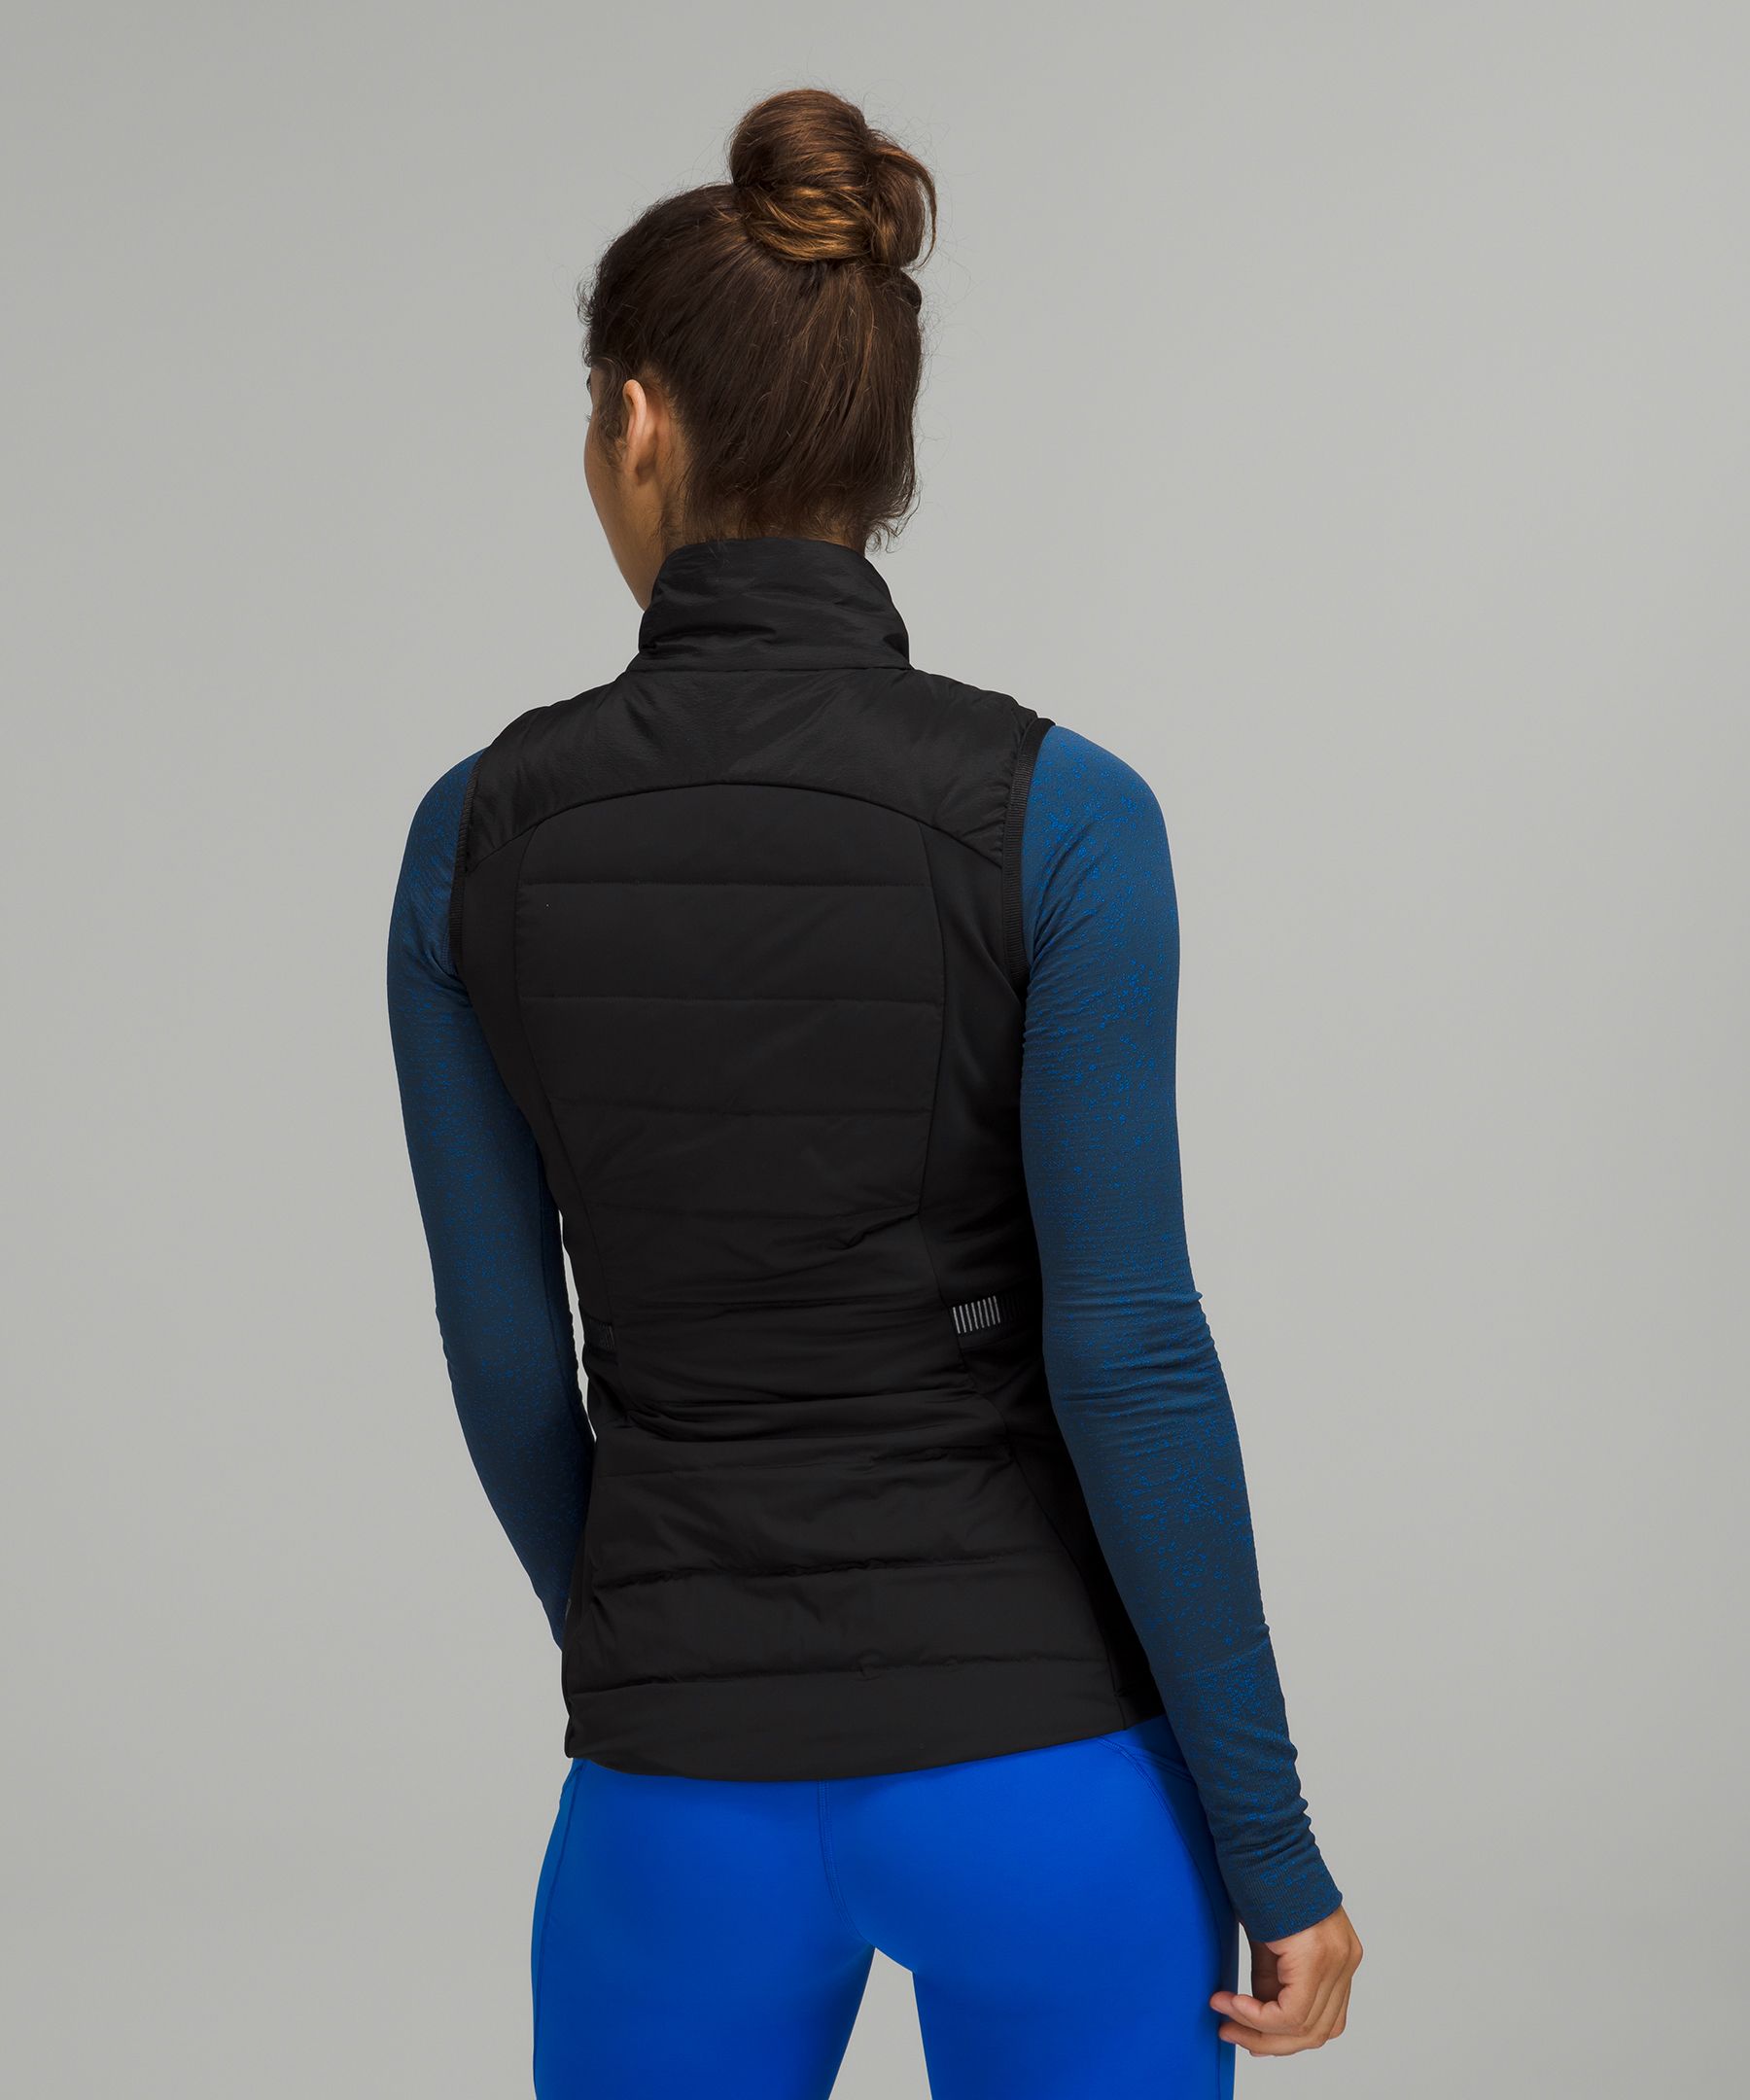 lululemon women's running vest